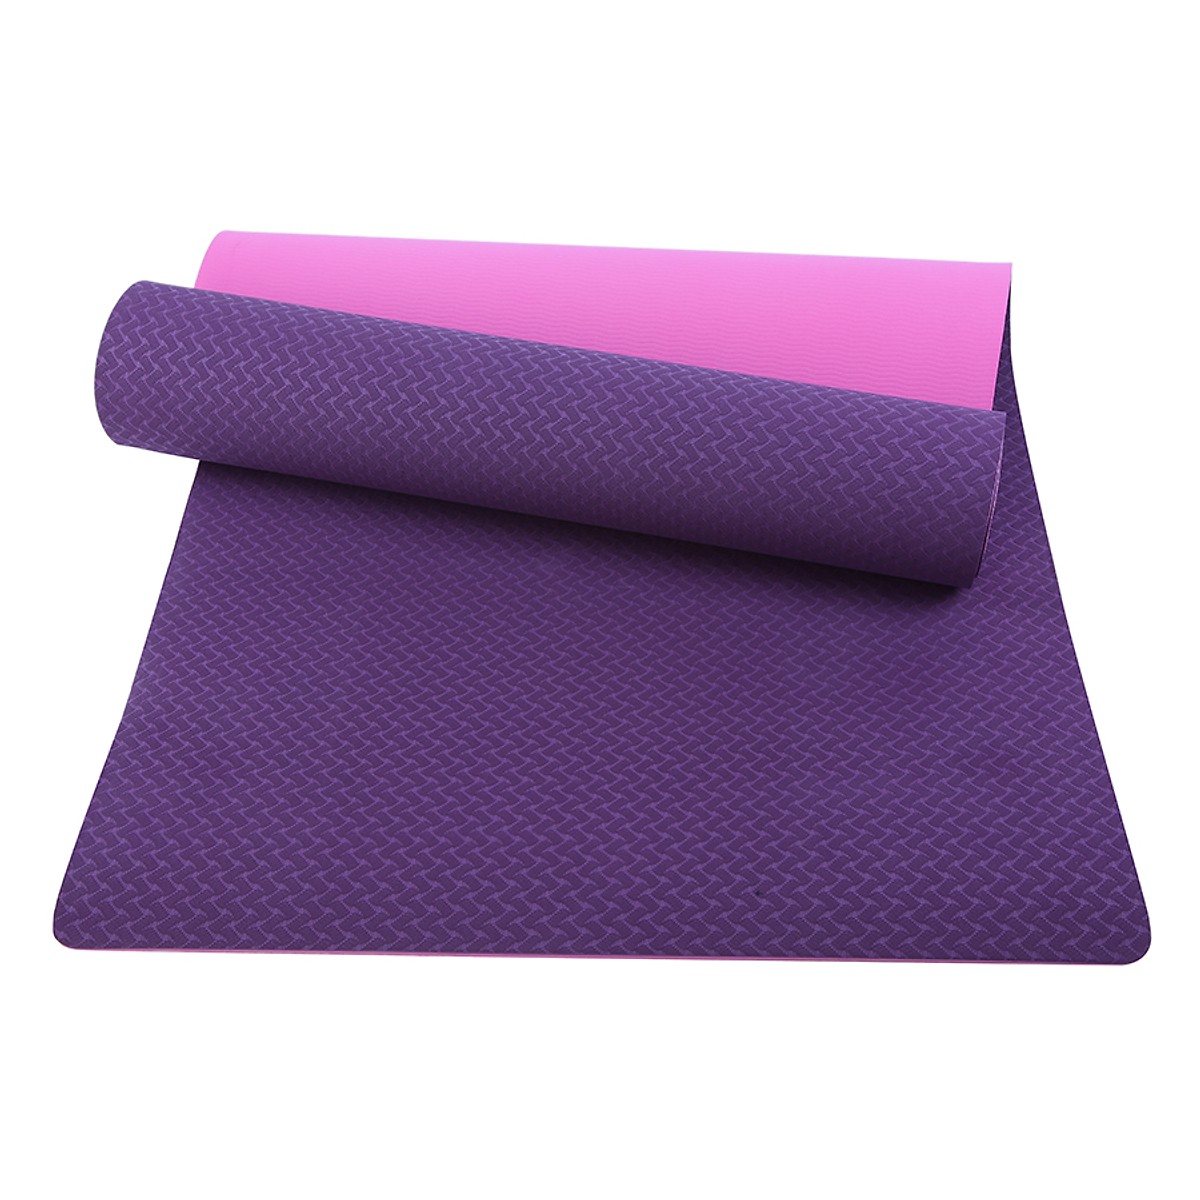 Thảm Yoga miDoctor Dày 6mm + Bao Thảm Yoga +Dây Buộc Thảm Yoga (Giao màu ngẫu nhiên)